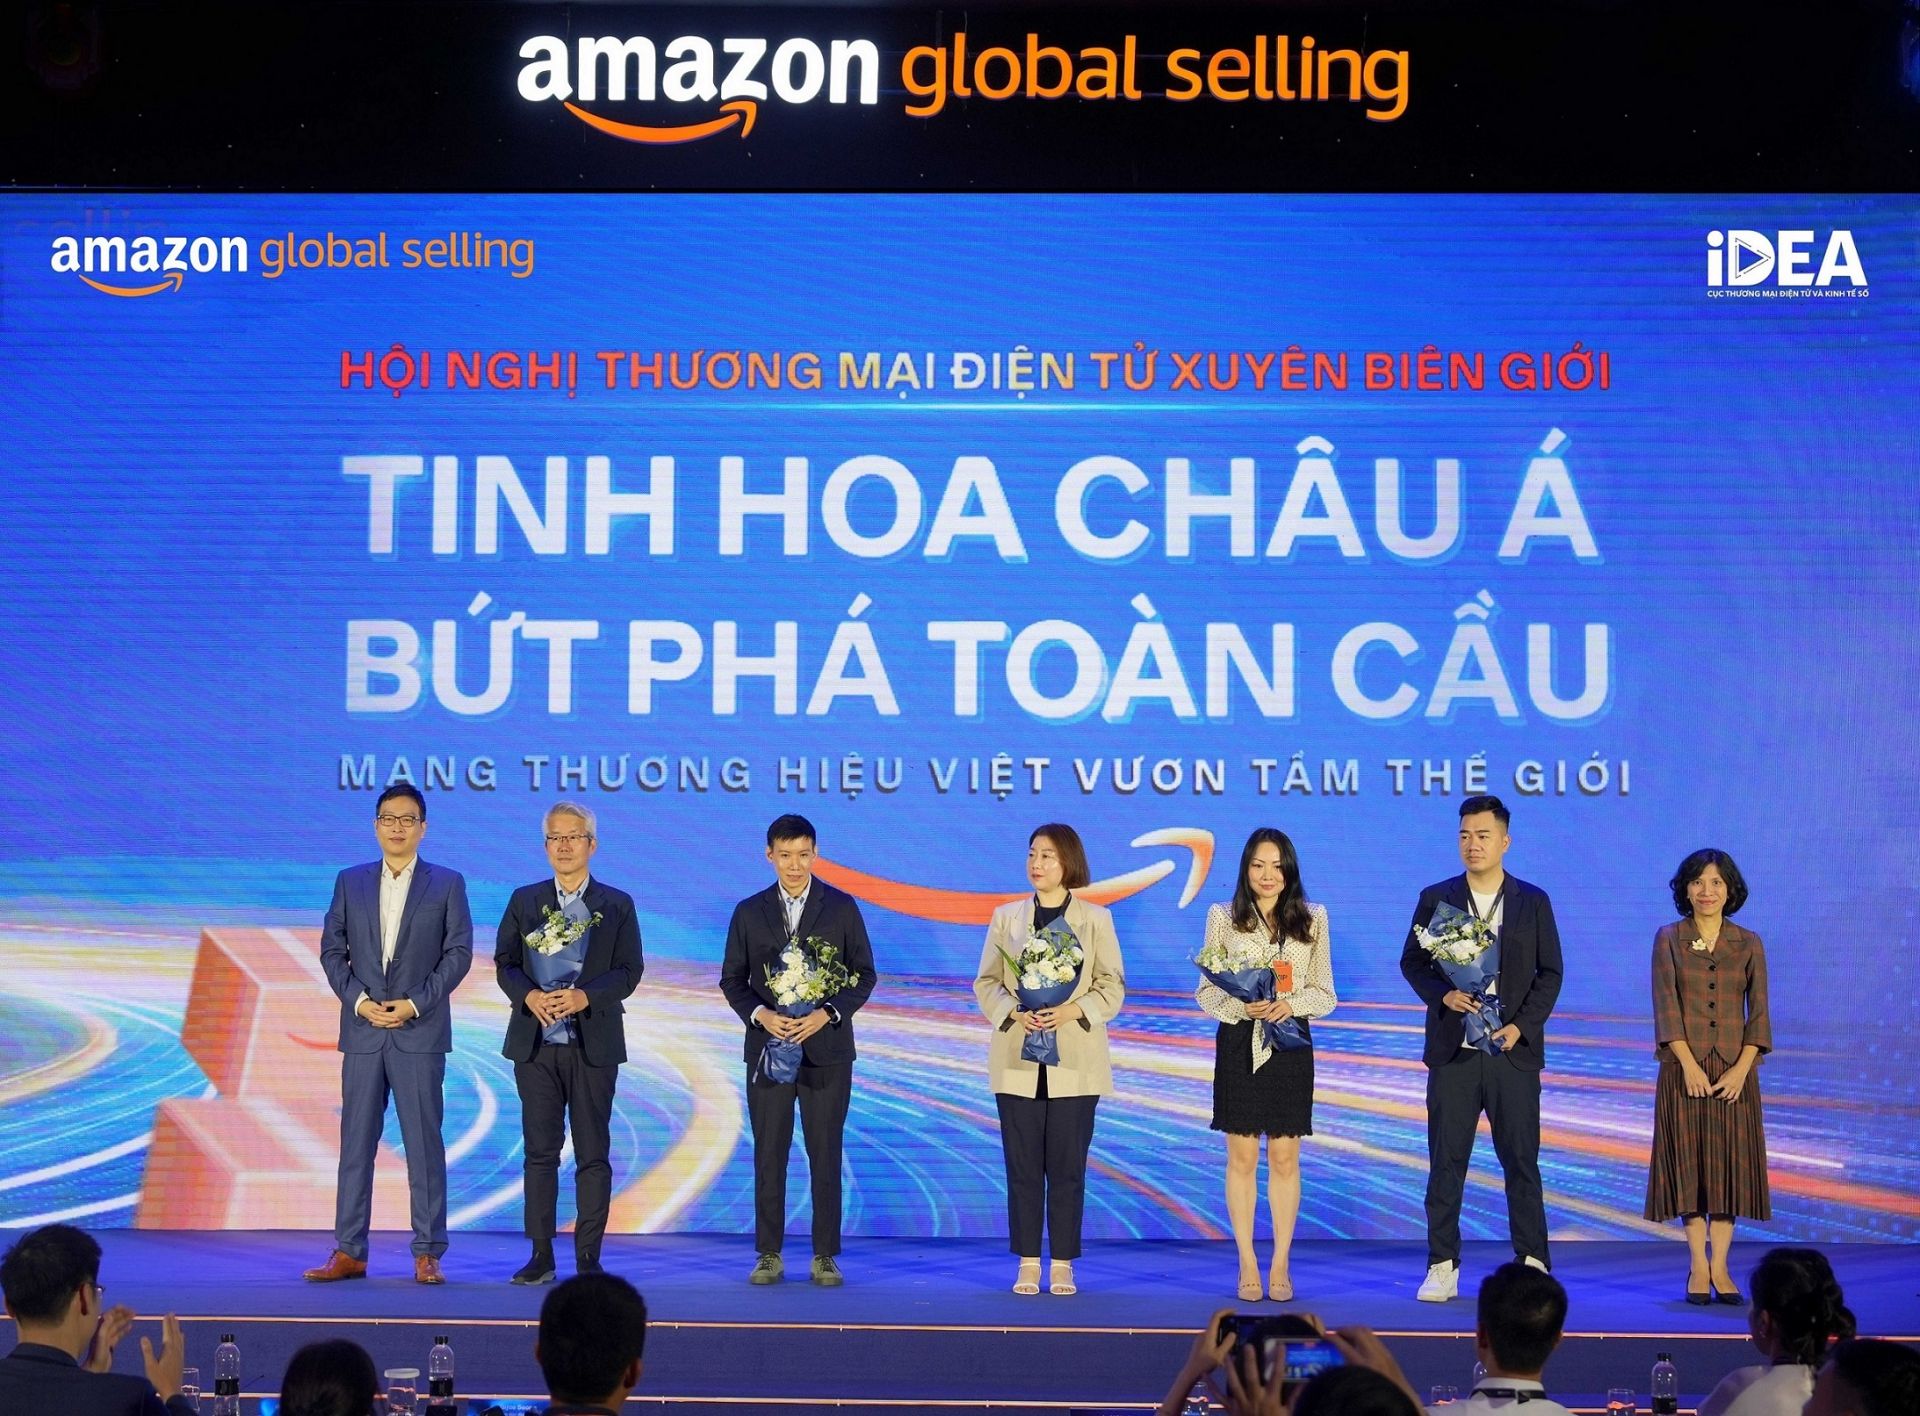 Amazon Global Selling phối hợp cùng Cục Thương mại Điện tử và Kinh tế số - thuộc Bộ Công Thương khai mạc Hội nghị Thương mại Điện tử xuyên biên giới “Tinh hoa Châu Á, Bứt phá toàn cầu”